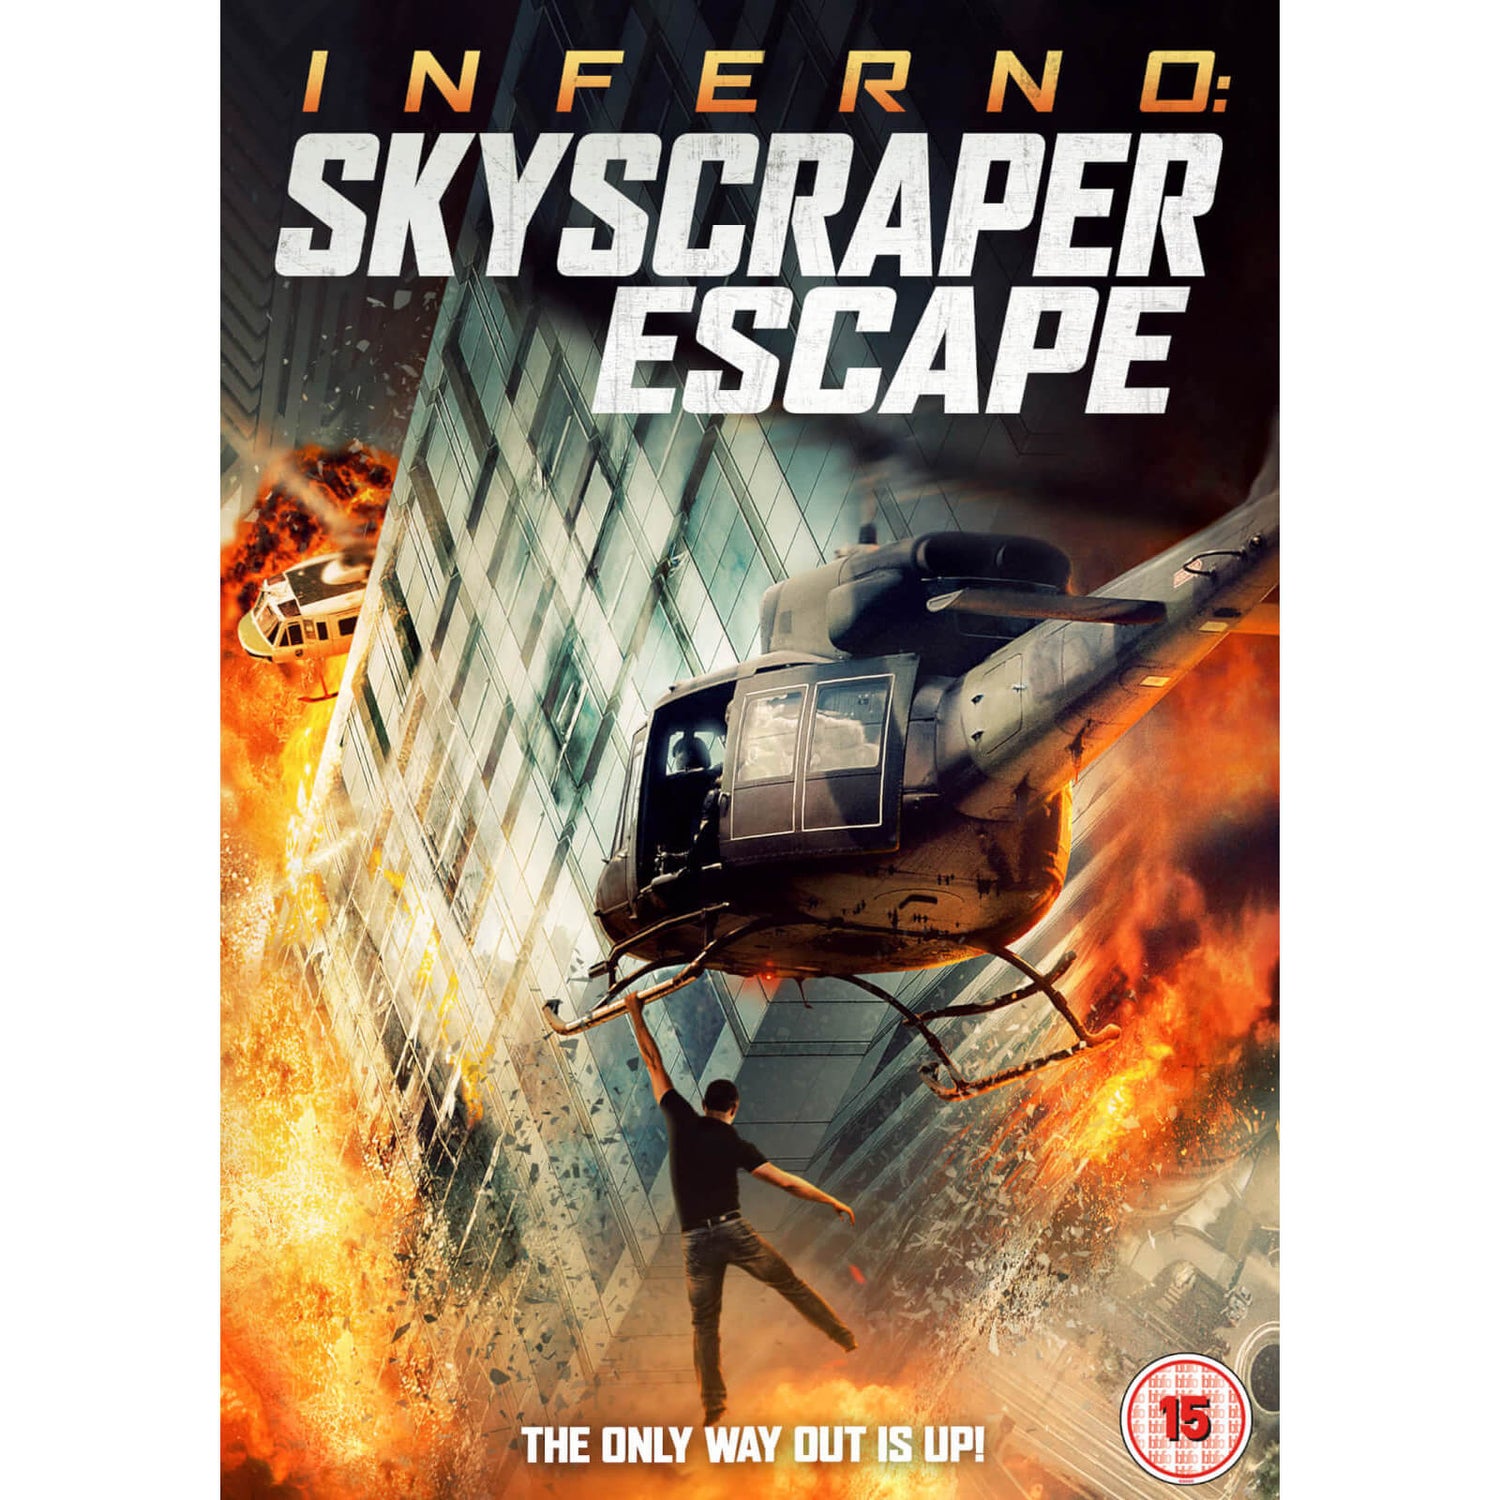 Inferno: Skyscraper Escape